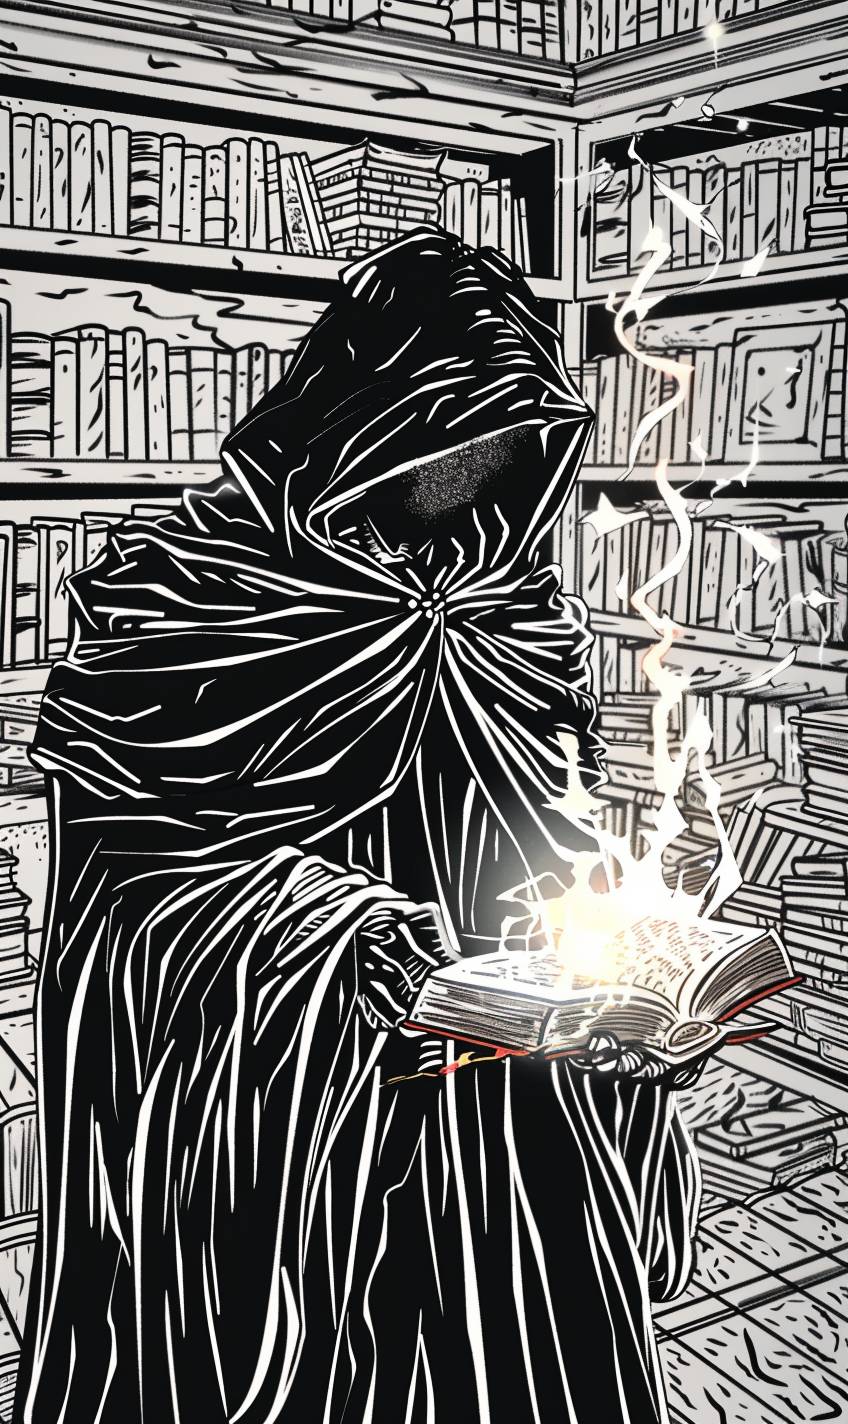 古代の神秘な書物や神秘的な遺物でいっぱいの暗い古代図書館で、謎の魔法使いが強力な呪文を唱える